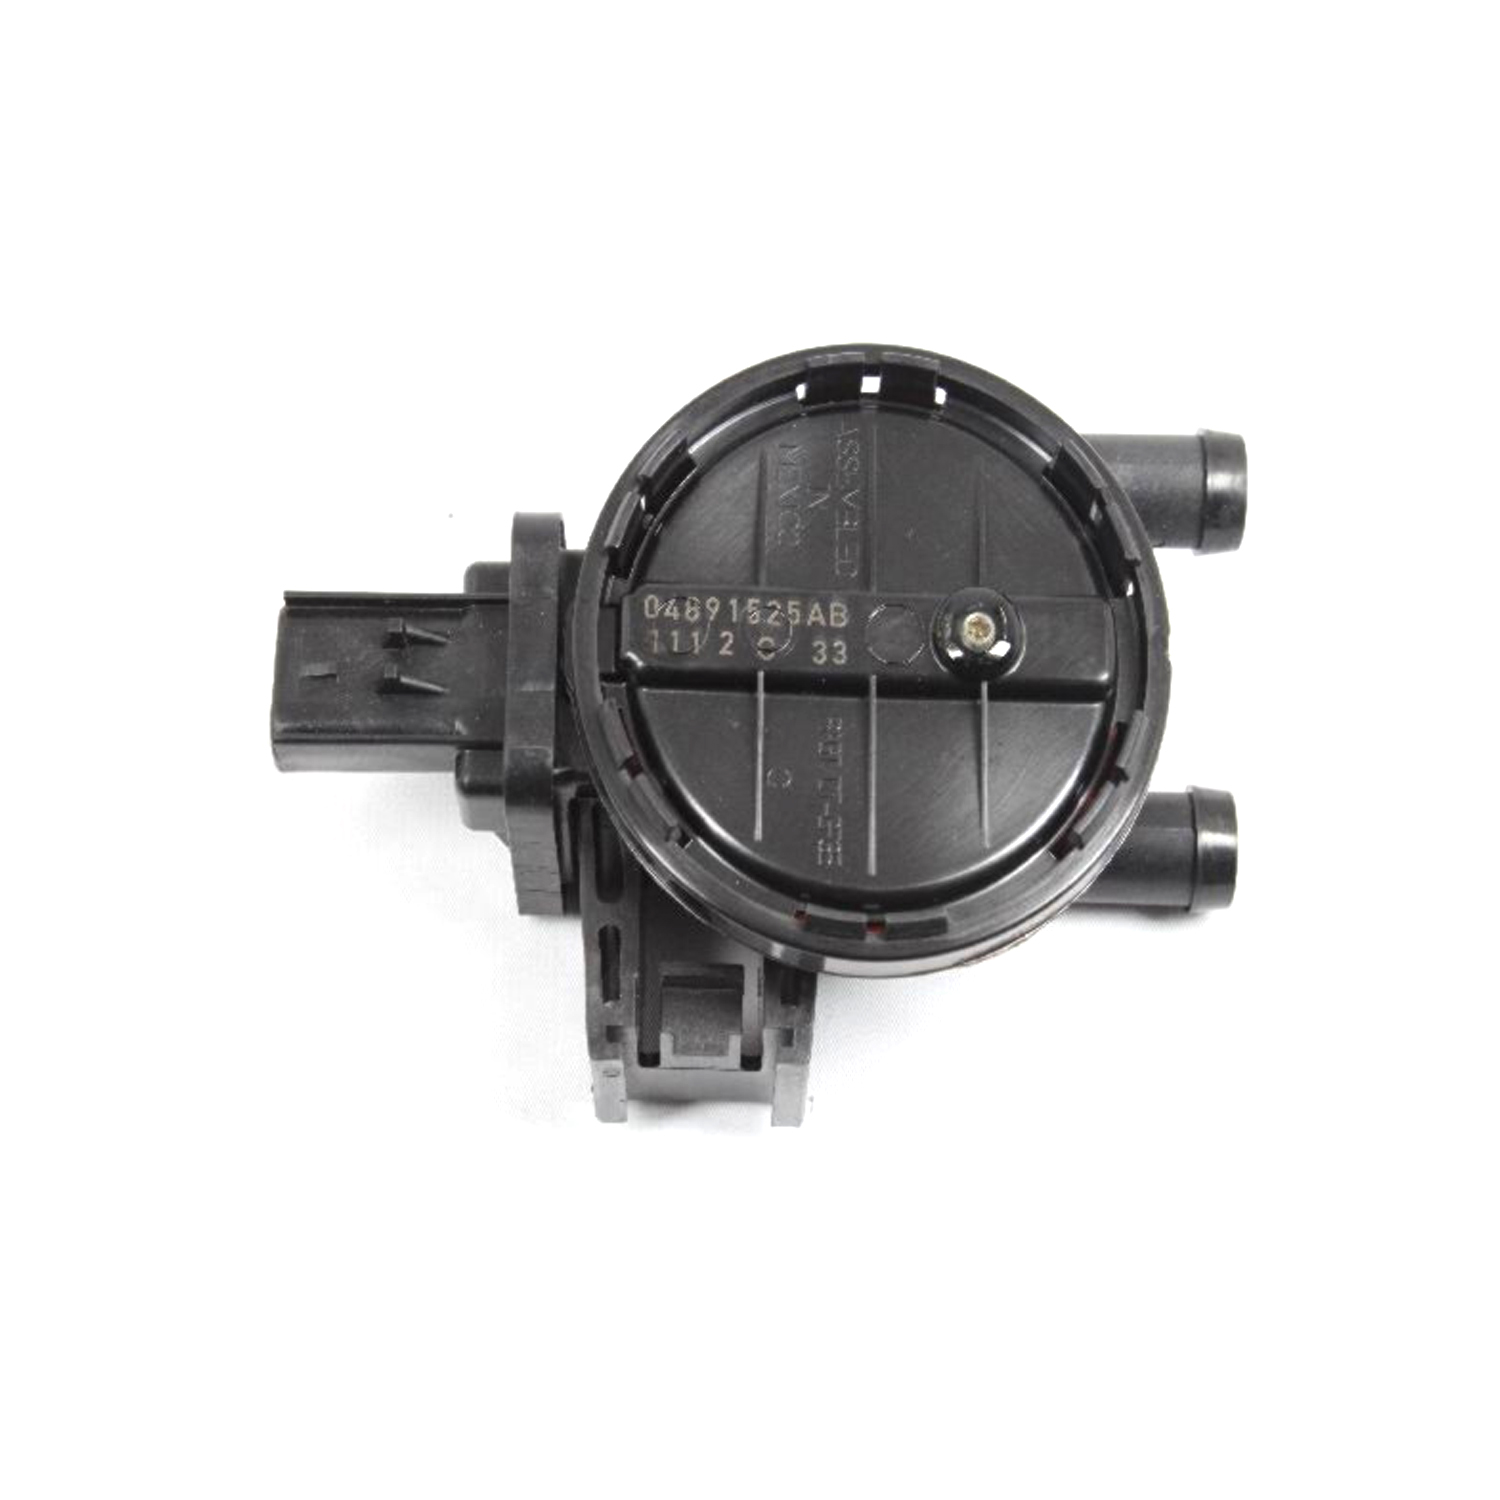 MOPAR PARTS - Fuel Vapor Leak Detection Pump - MOP 4891525AB